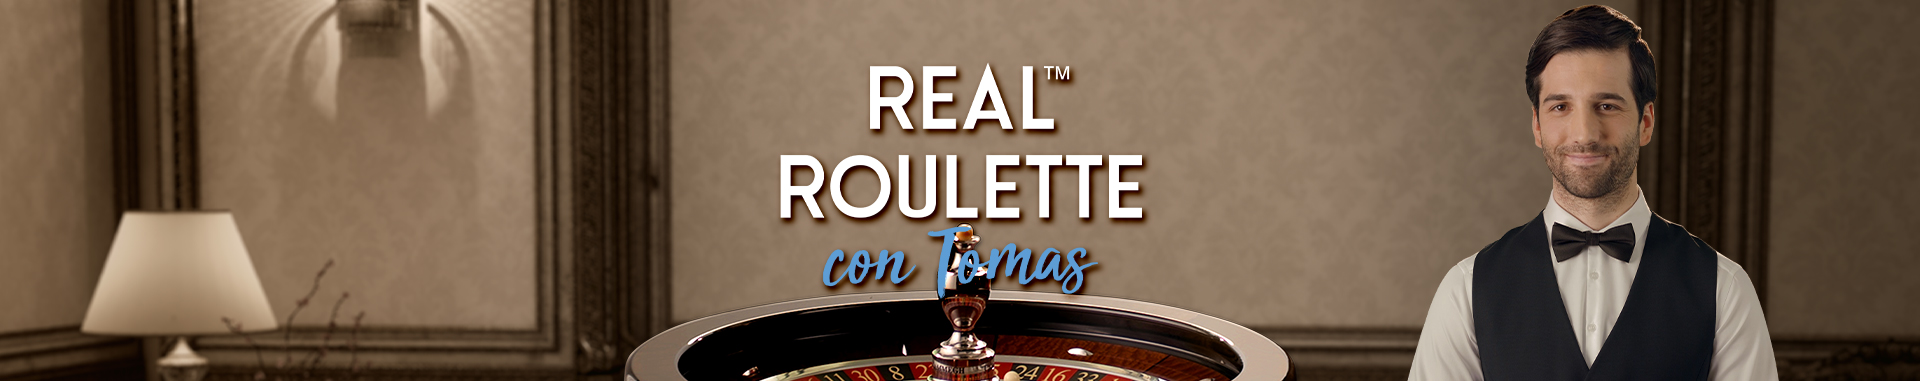 Ruleta Real Roulette con Tomas